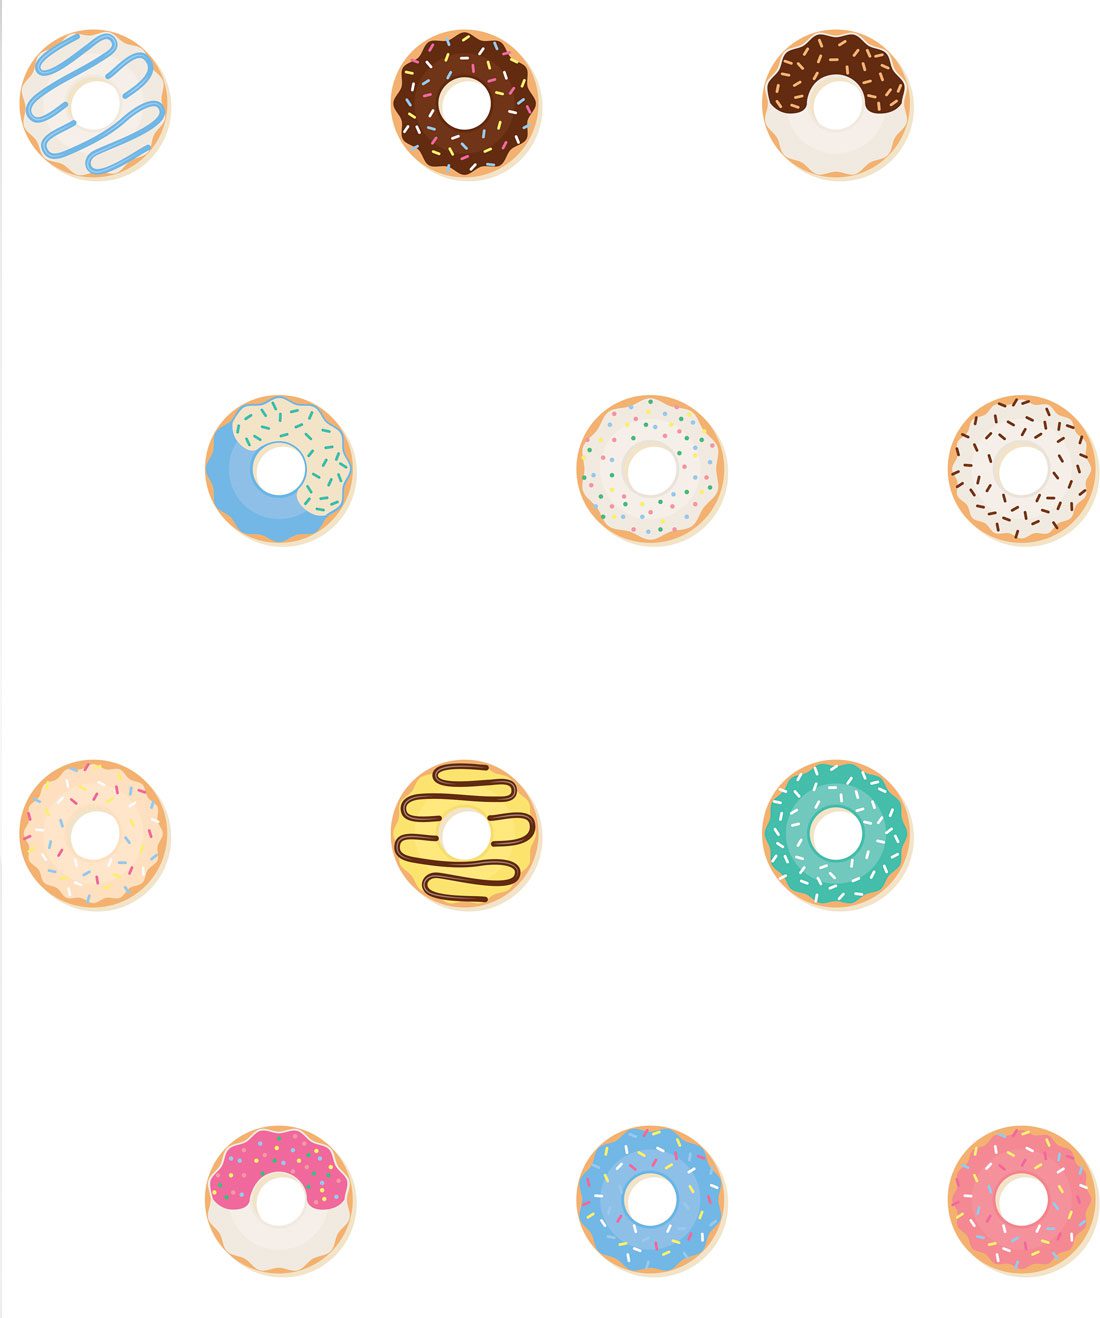 Doughnuts Wallpaper, Playful & Fun Kids Wallpaper